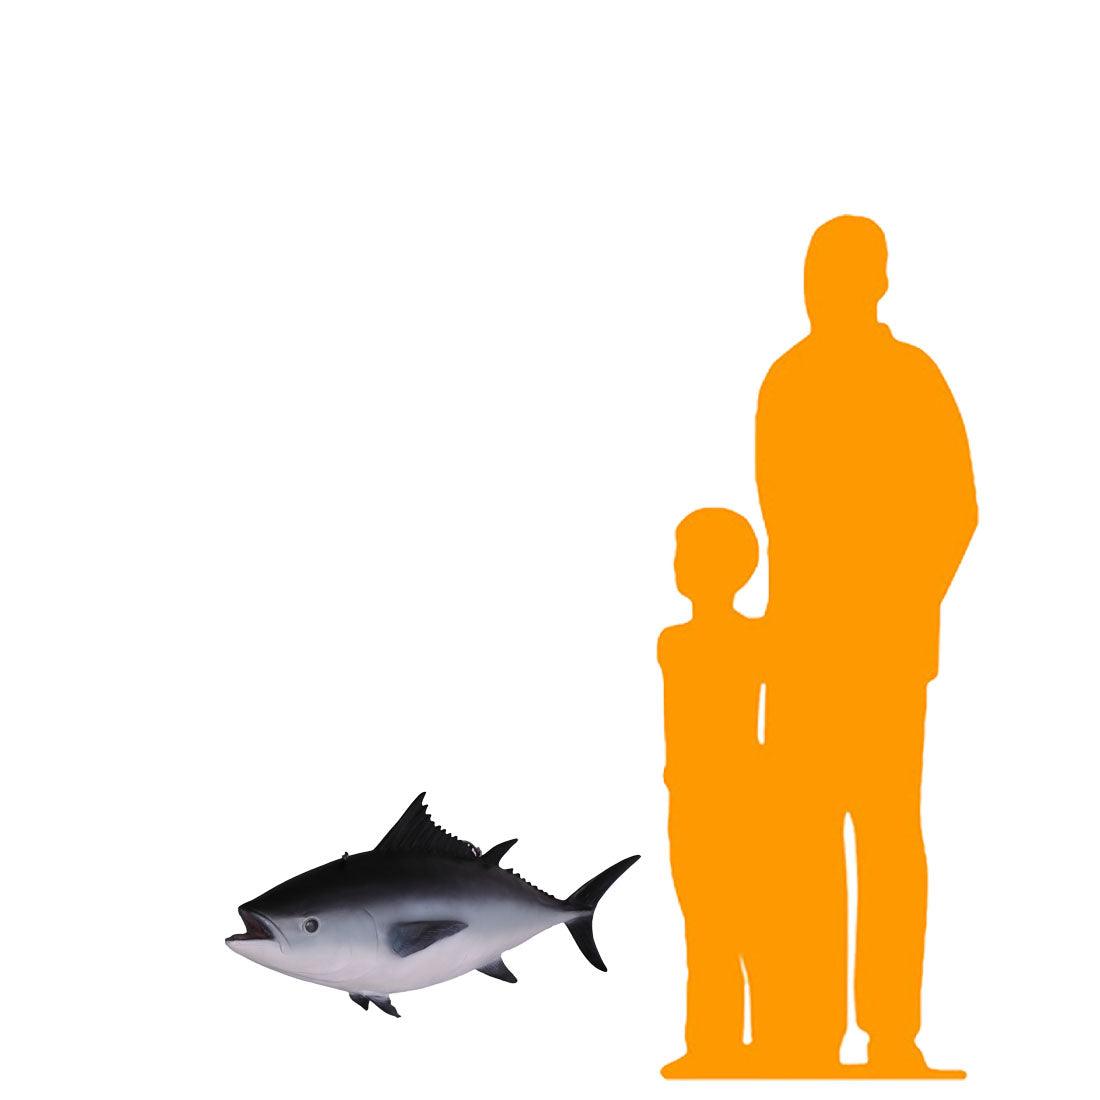 Tuna Fish Statue